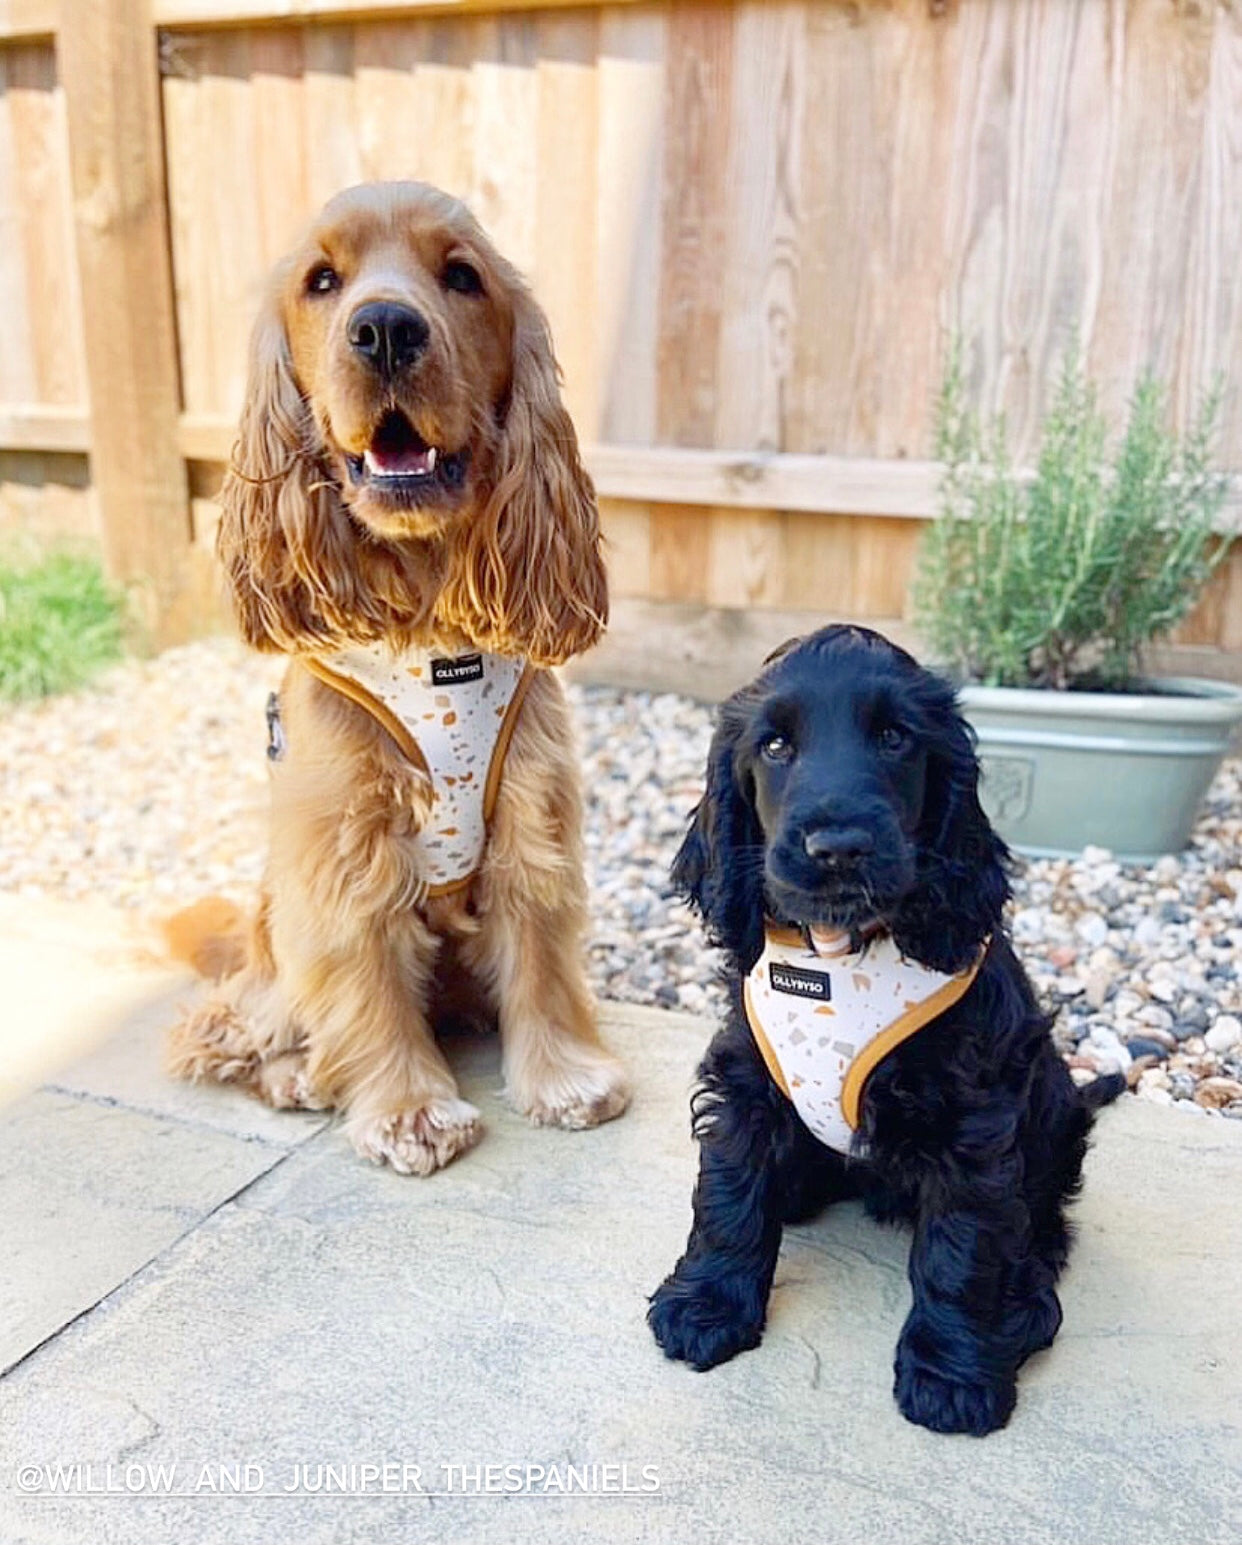 Fully Adjustable Dog Harness UK, dog harness UK, dog harness for puppy, adjustable dog harness